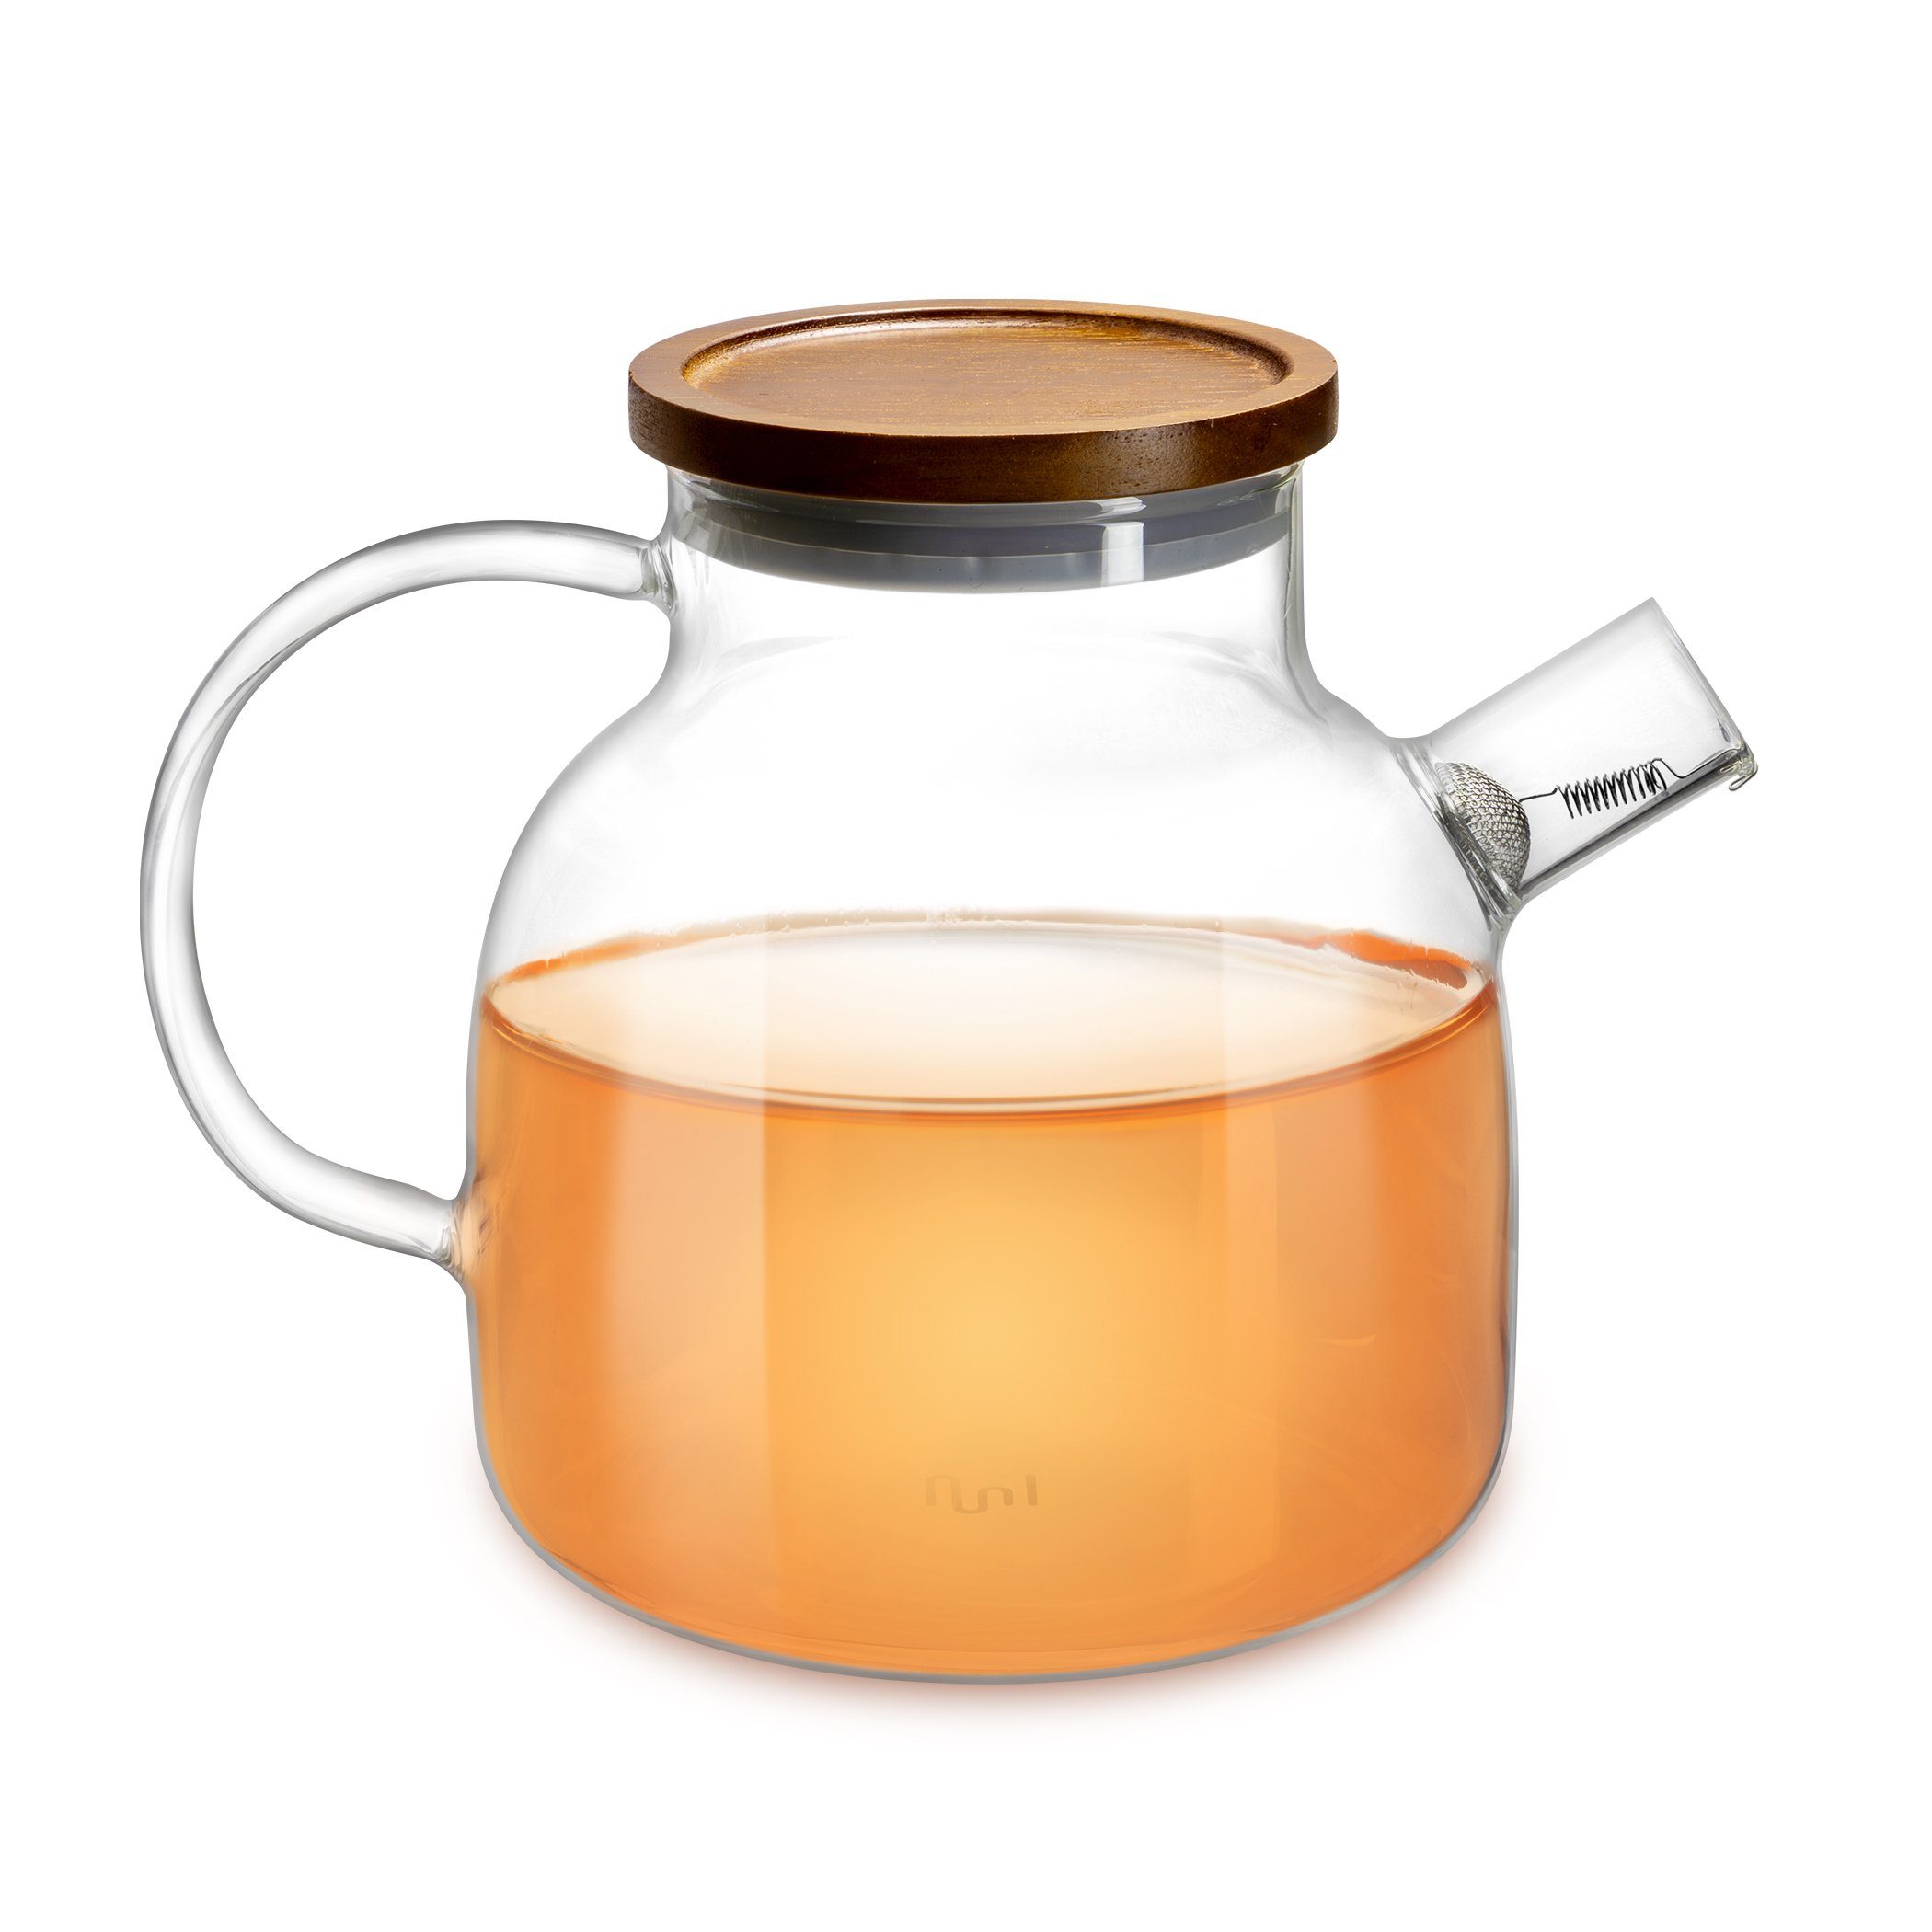 & Griff Glas Holzdeckel, Edelstahl-Filter Teekanne Impolio Hitzebeständiger Teekanne